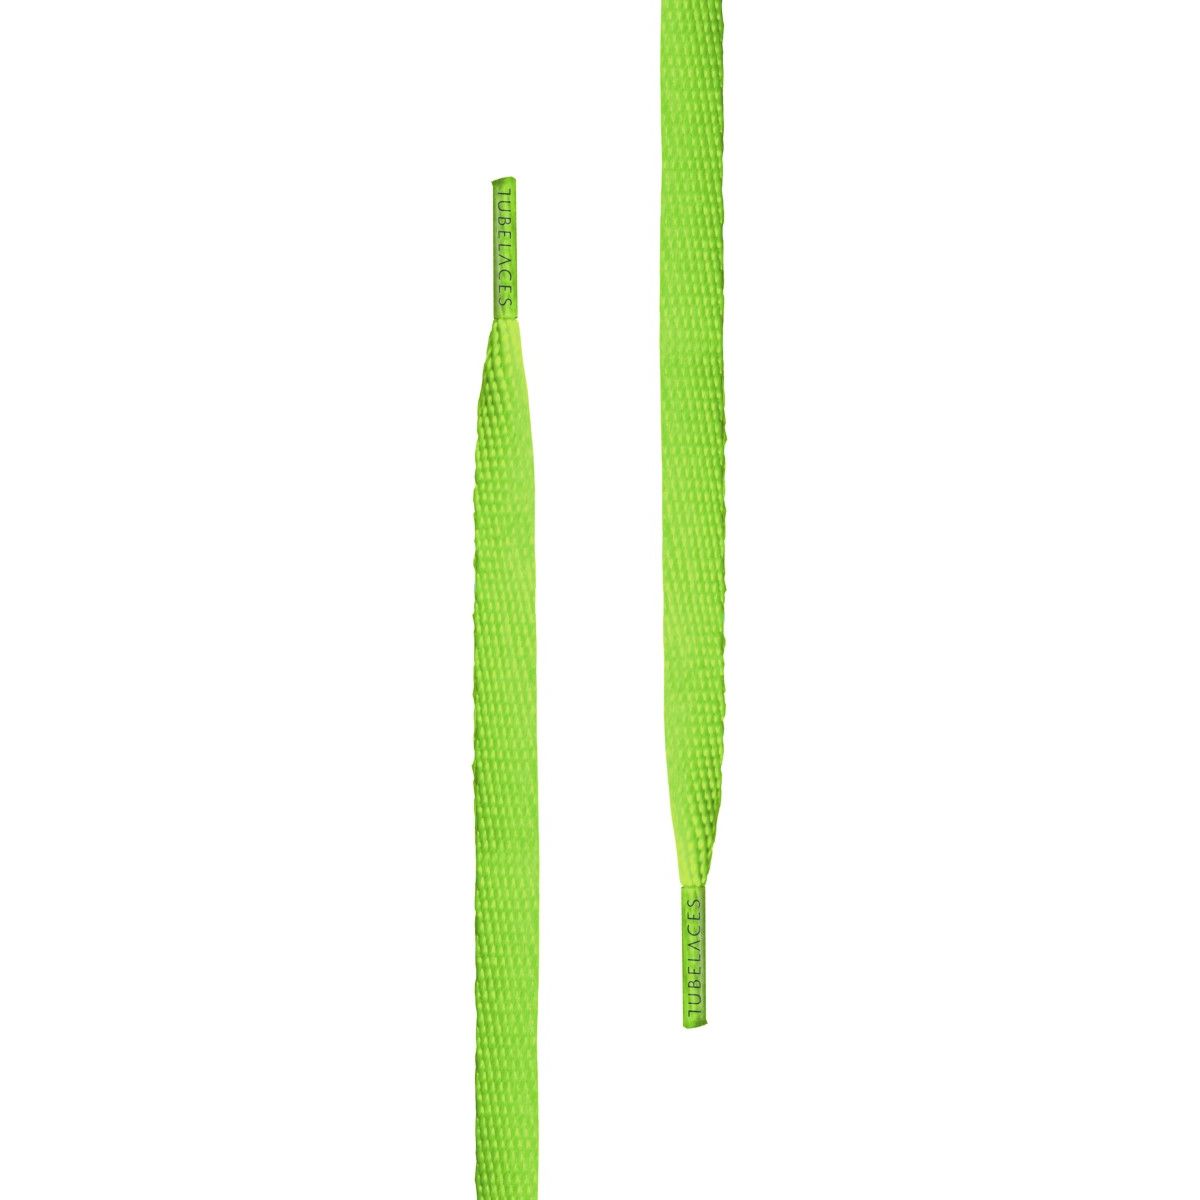 Tubelaces White Flat Unisex Shoelaces Neongreen 120 cm